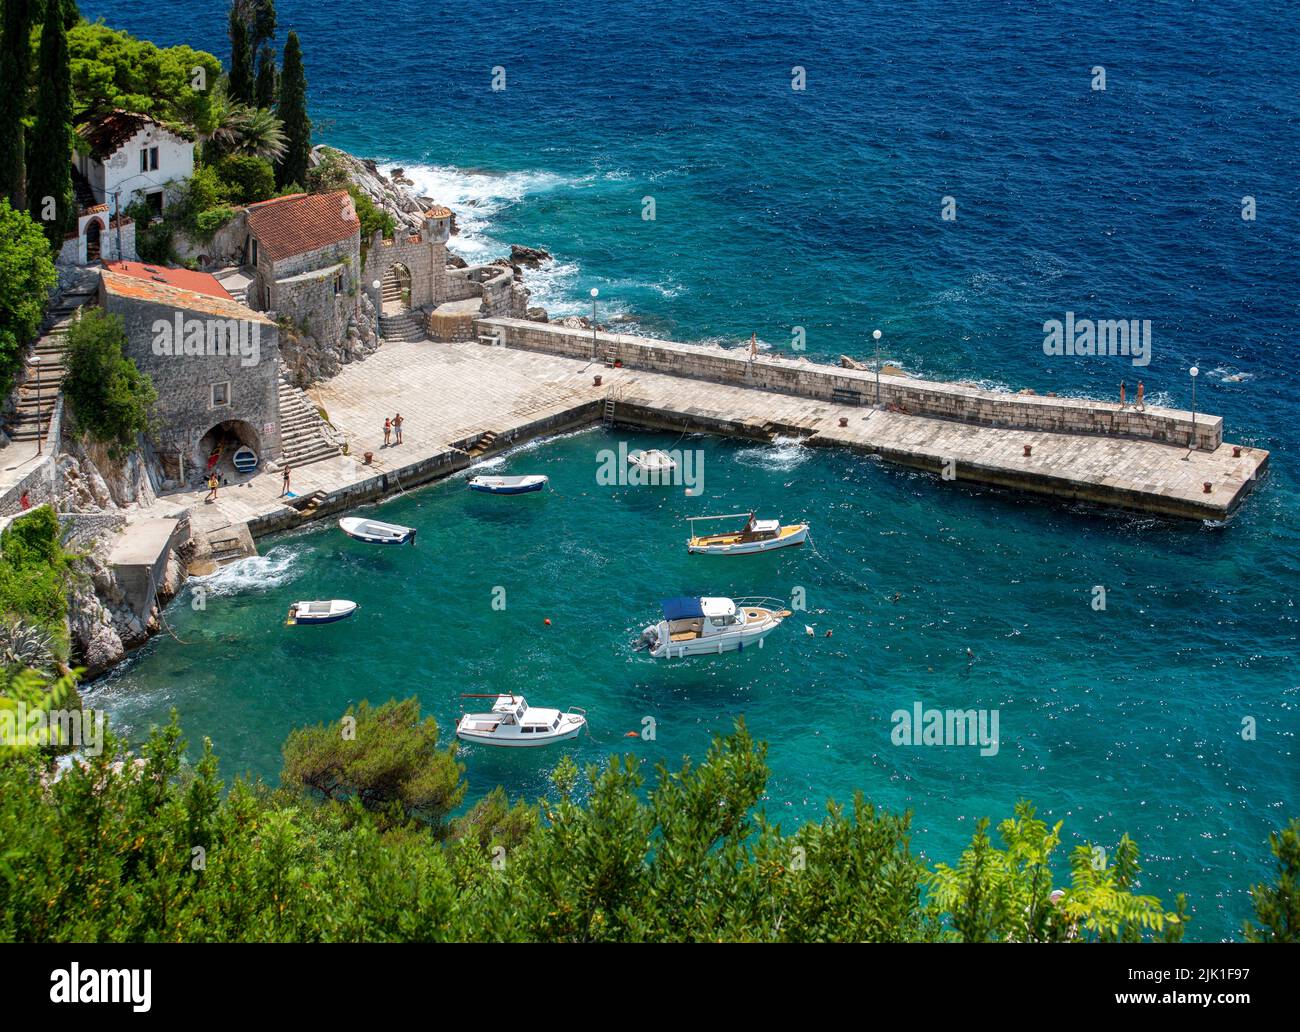 View of Trsteno harbor from the arboretum (Trsteno Arboretum, Dalmatia, Dubrovnik-Neretva County, Croatia). Stock Photo